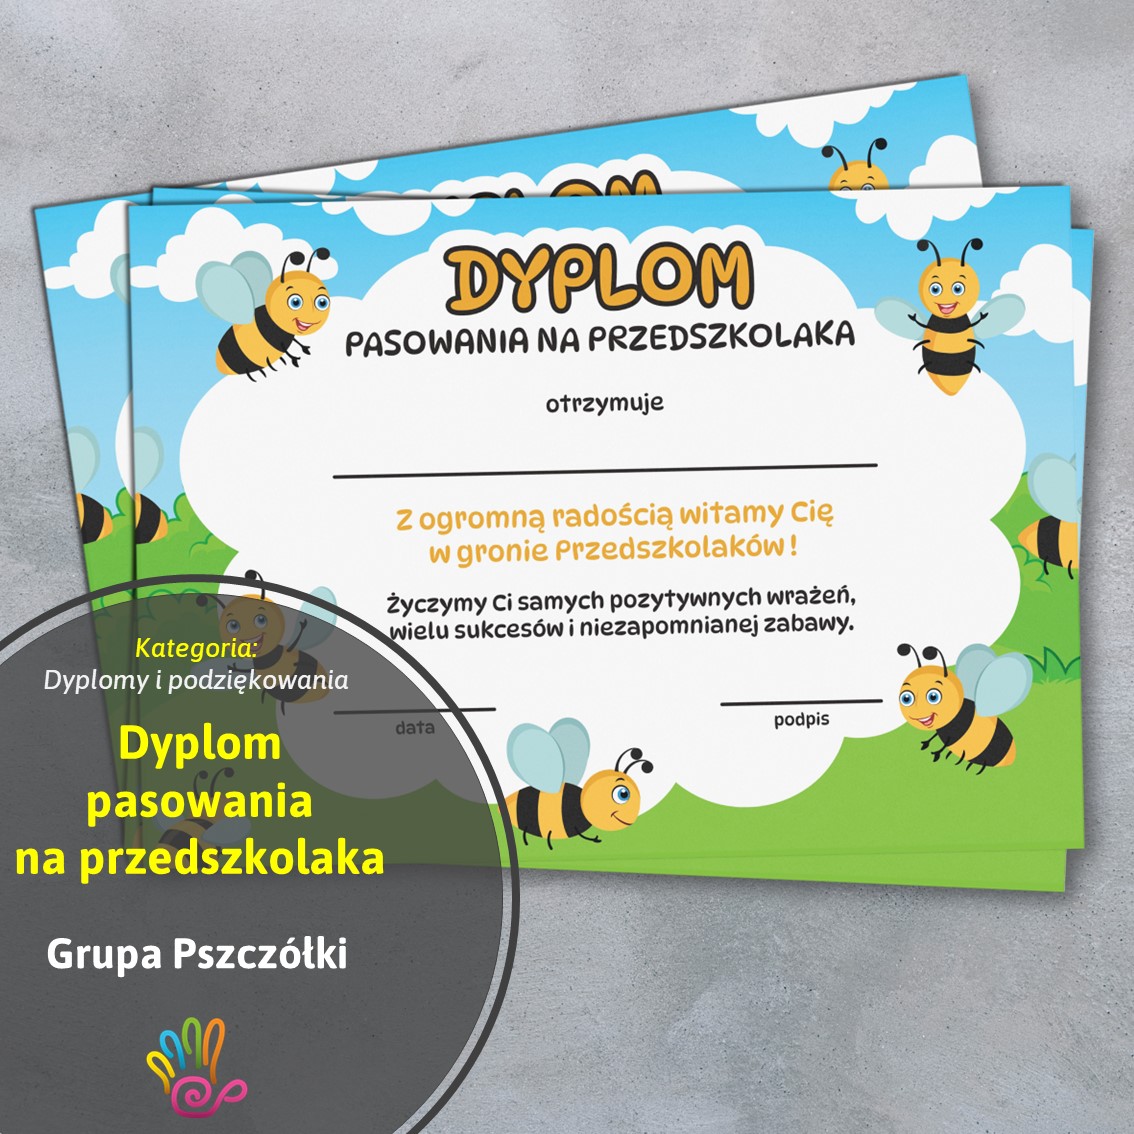 pszczoły pszczółki dyplom certyfikat pasowanie pasowania na przedszkolaka dzieci grupa przedszkolna pdf do druku pomoce materiały edukacyjne dydaktyczne